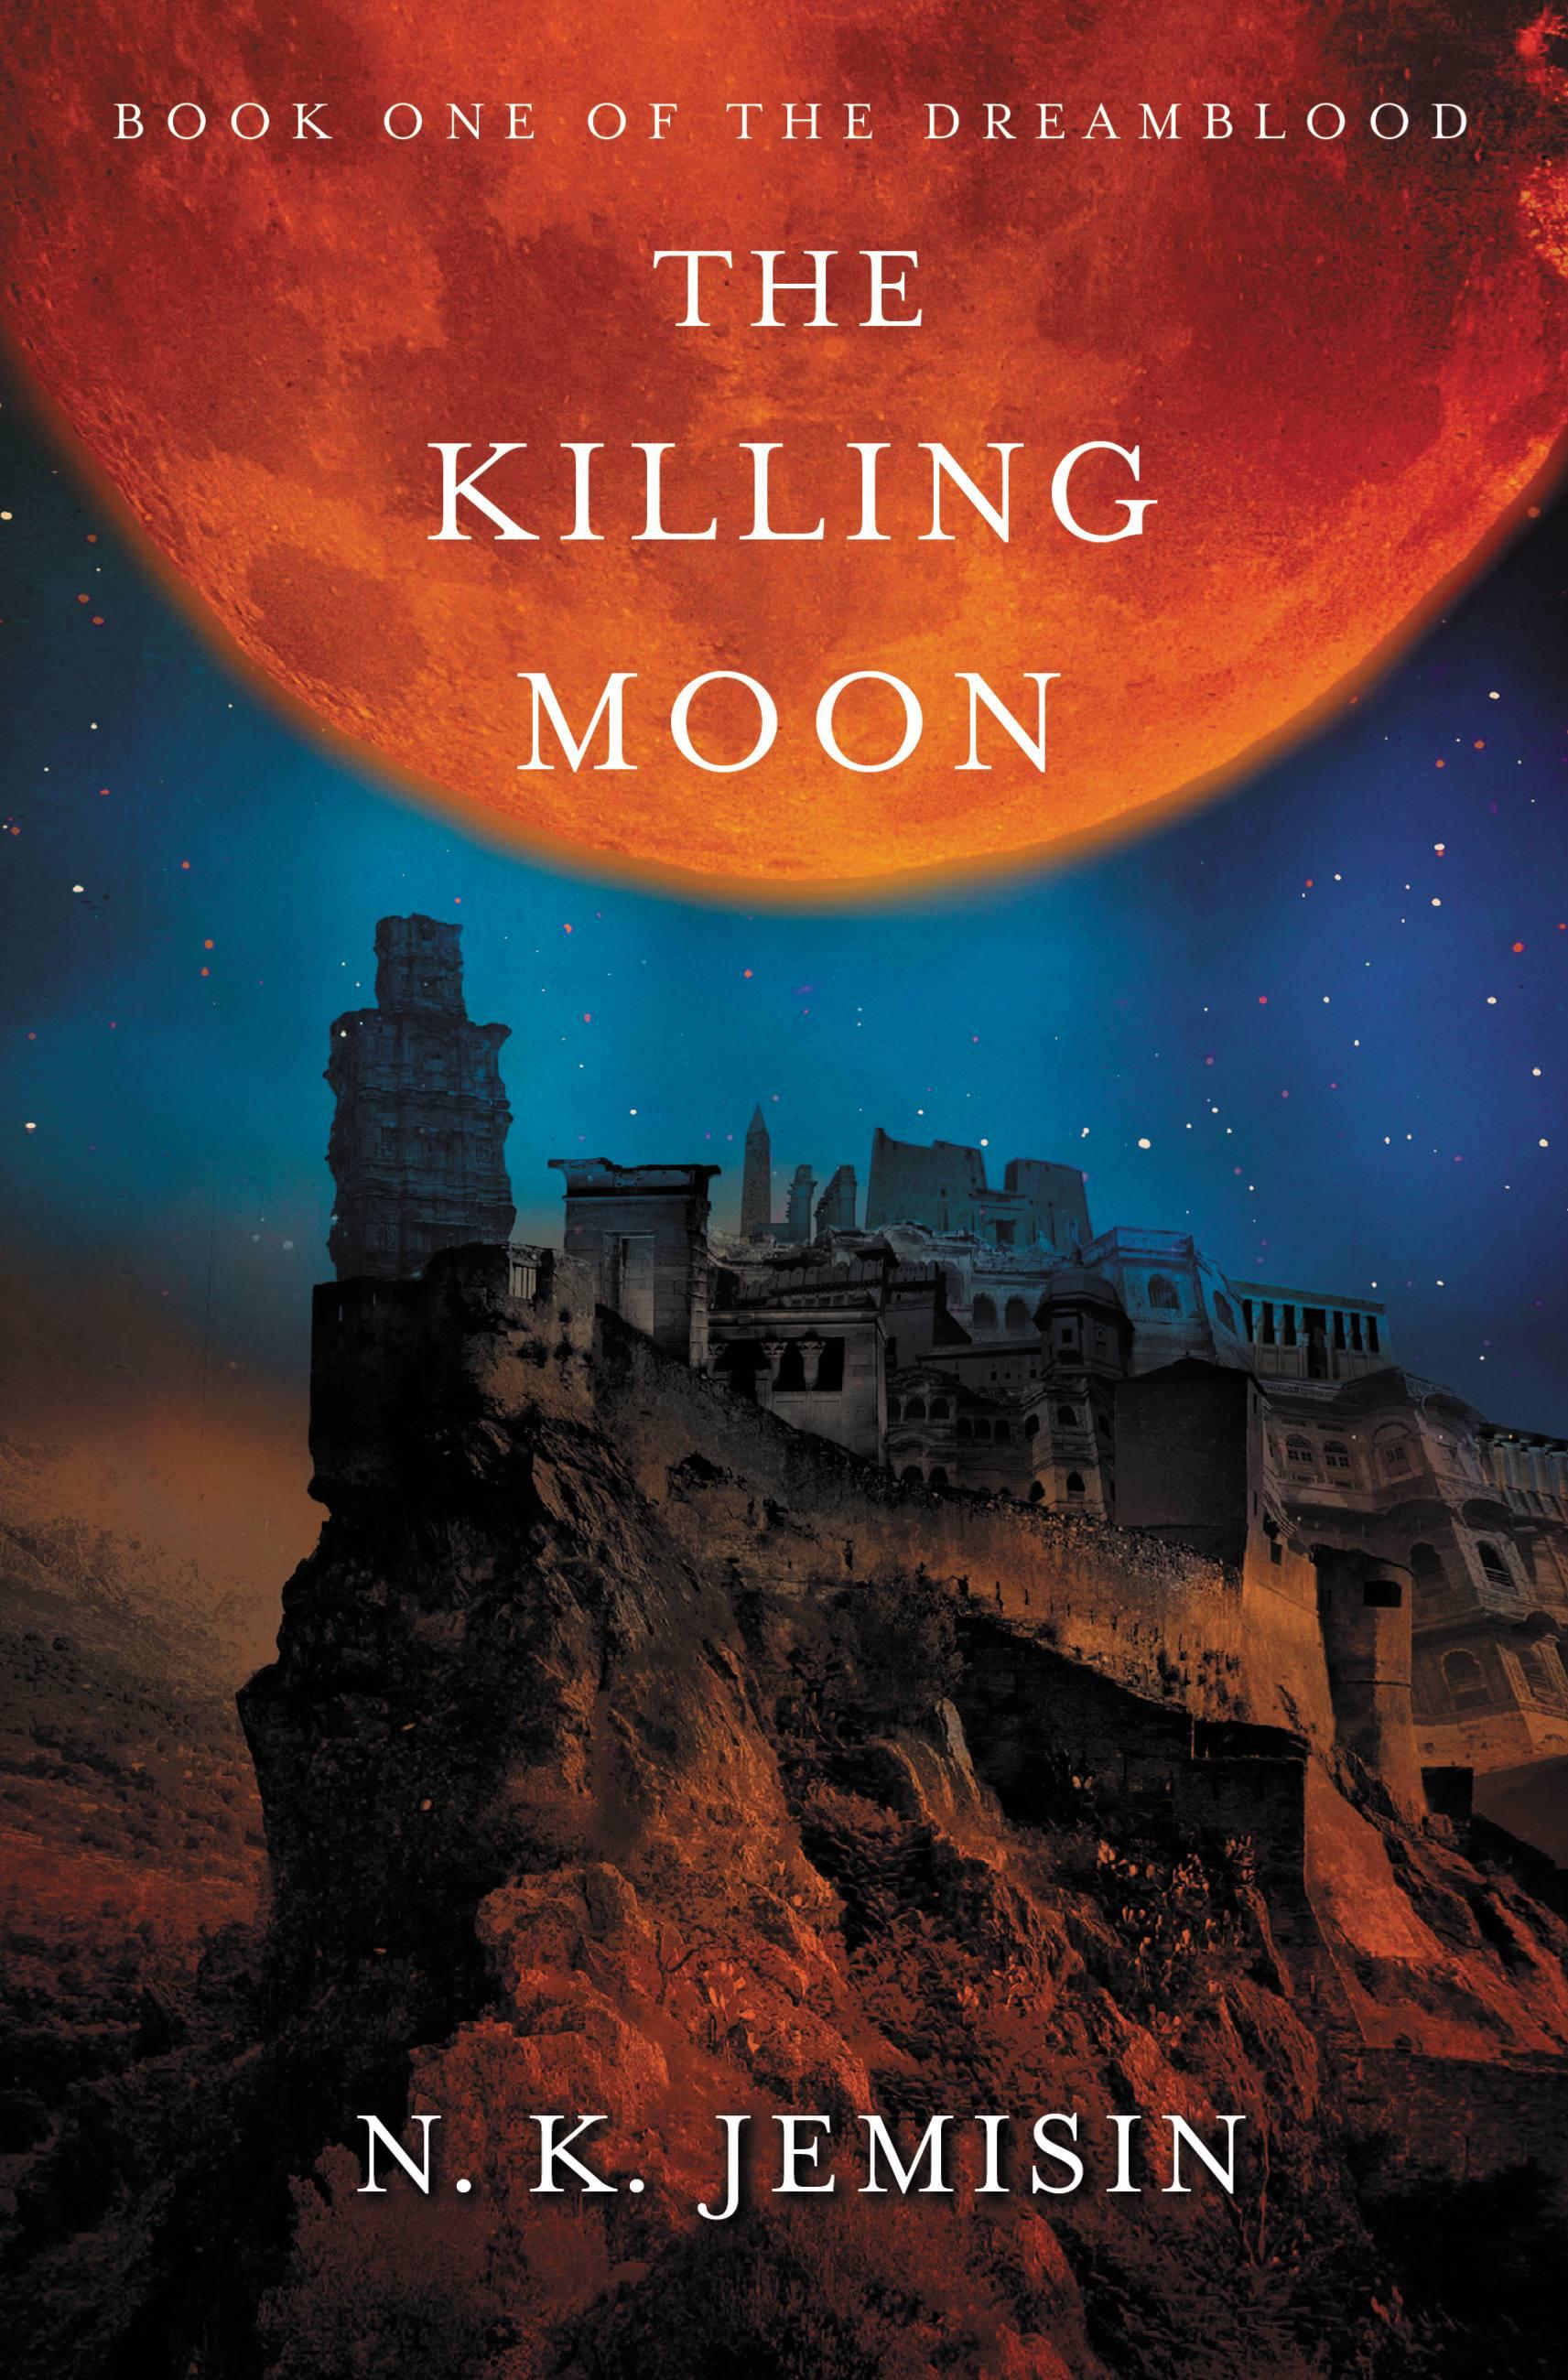 The Killing Moon - Jemisin, N. K.